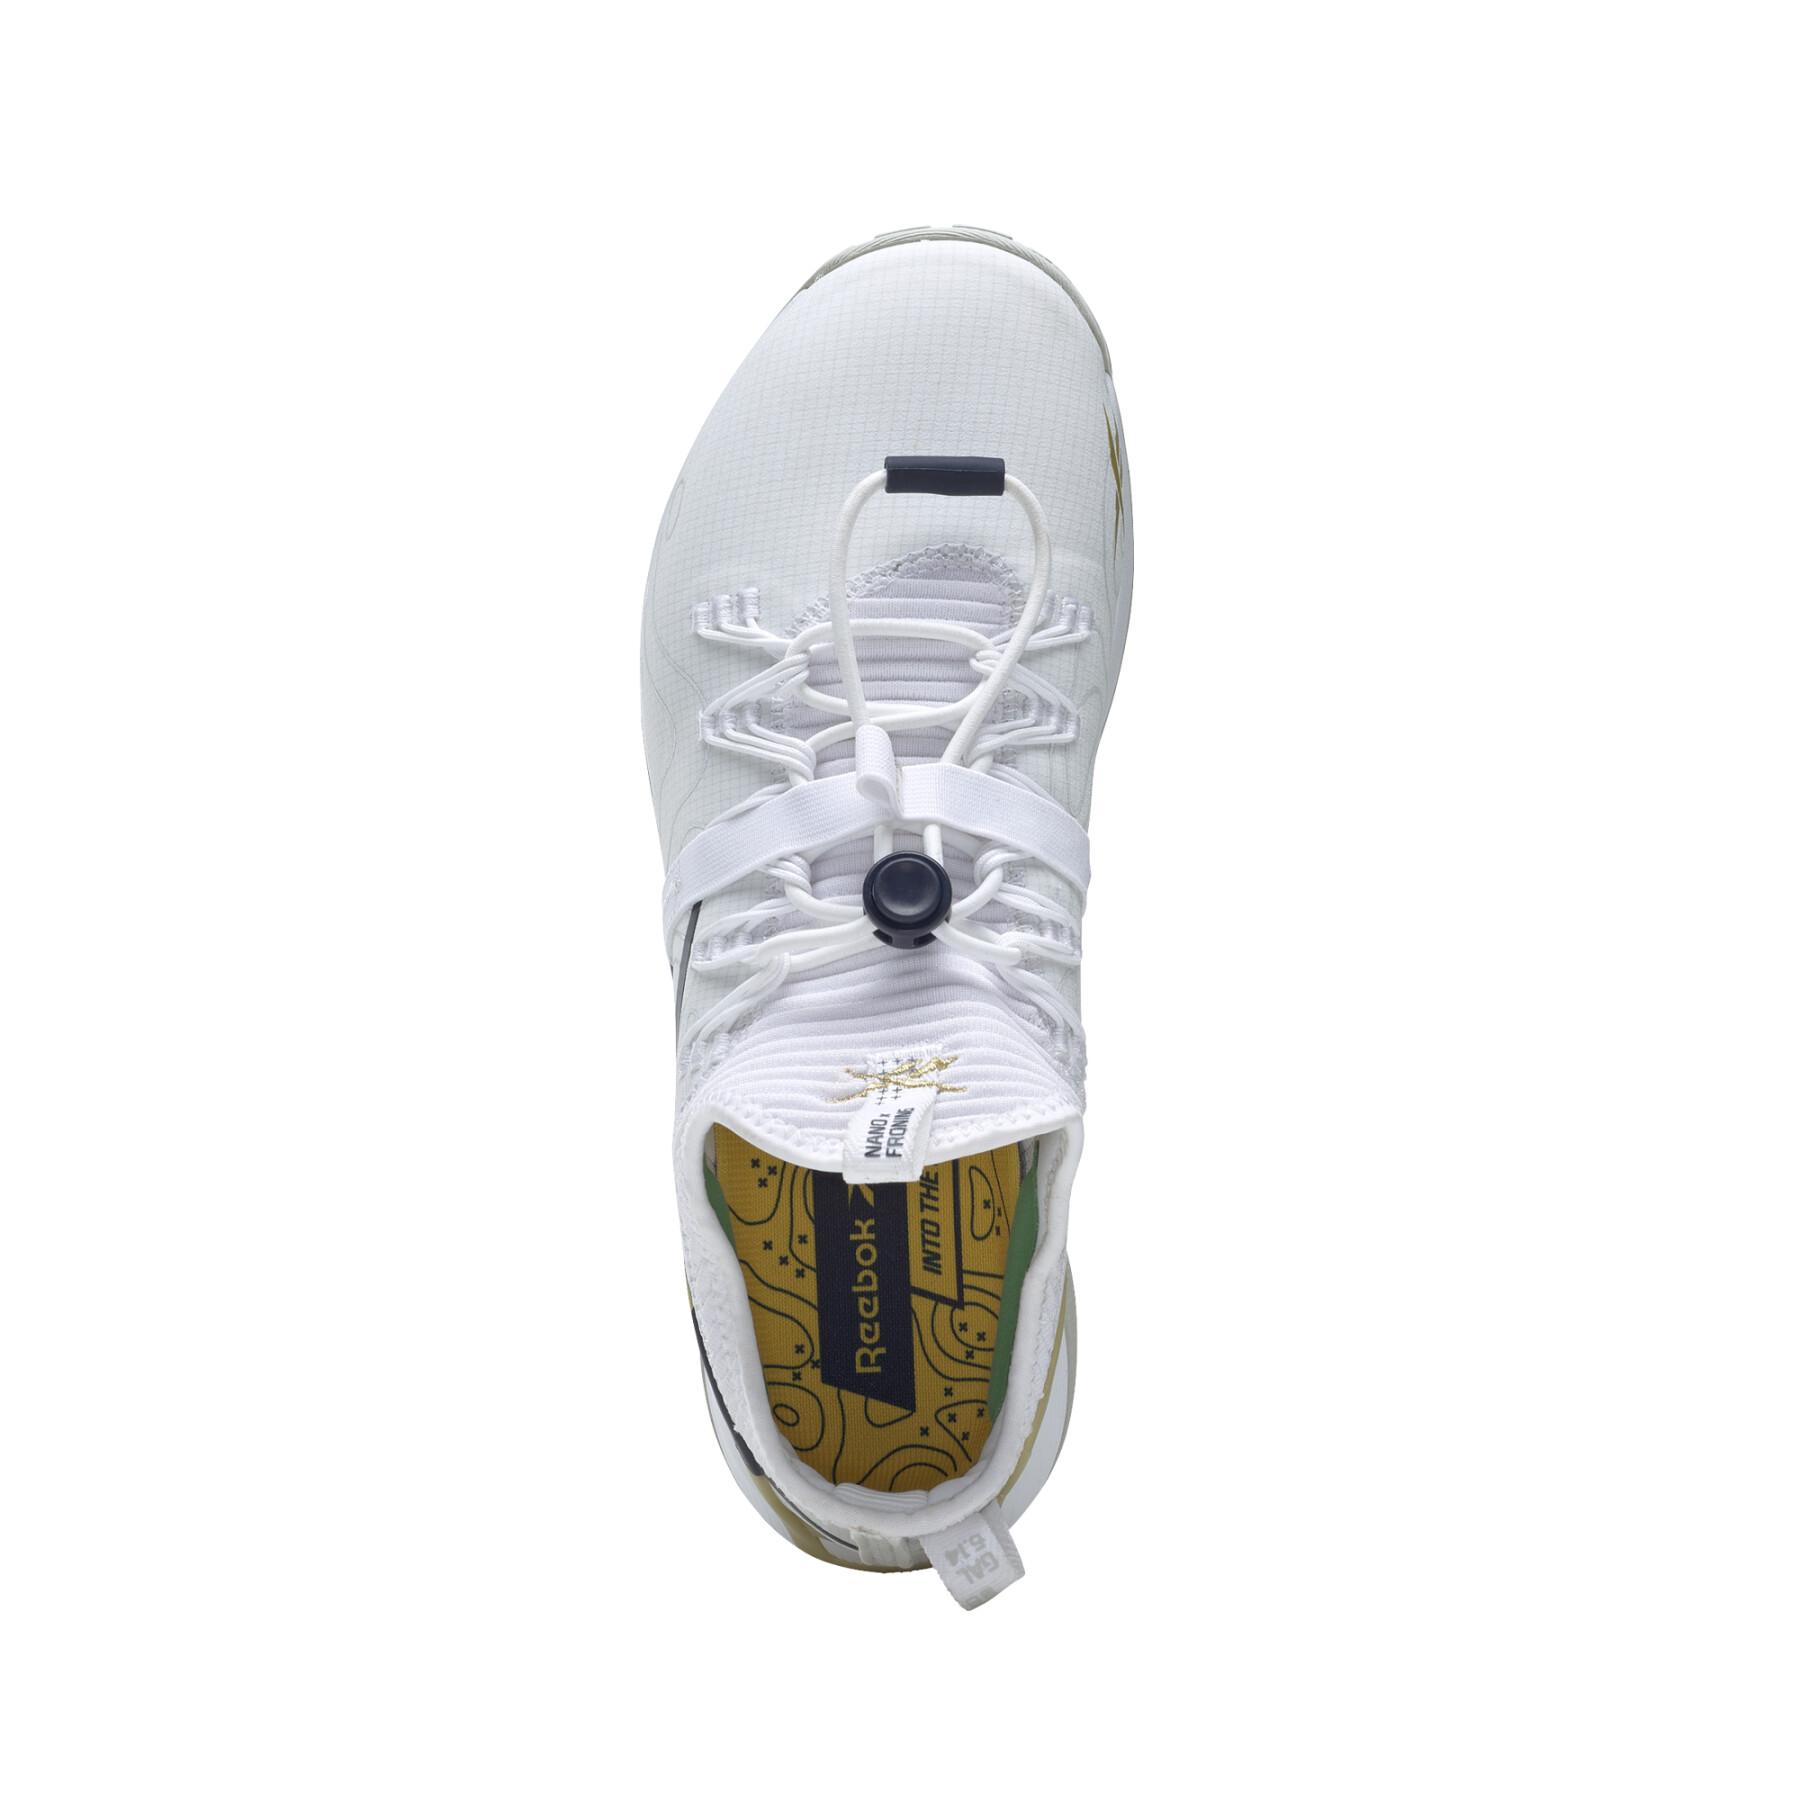 Schuhe Reebok Nano X1 Froning